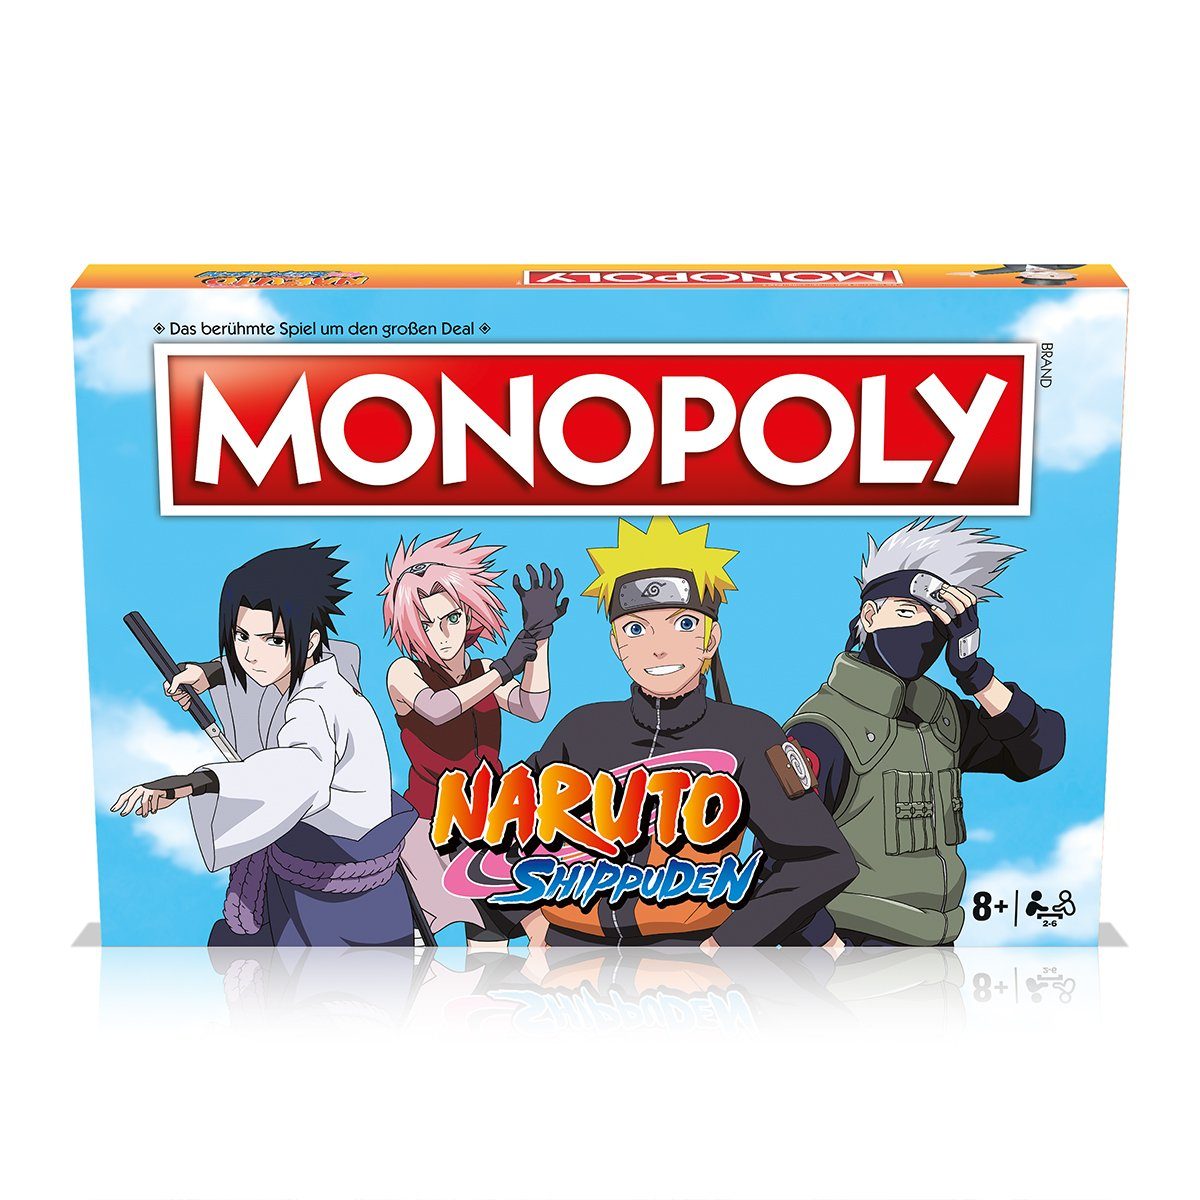 Winning Brettspiel Spiel, Gesellschaftsspiel (deutsch) Moves Brettspiel Naruto Monopoly